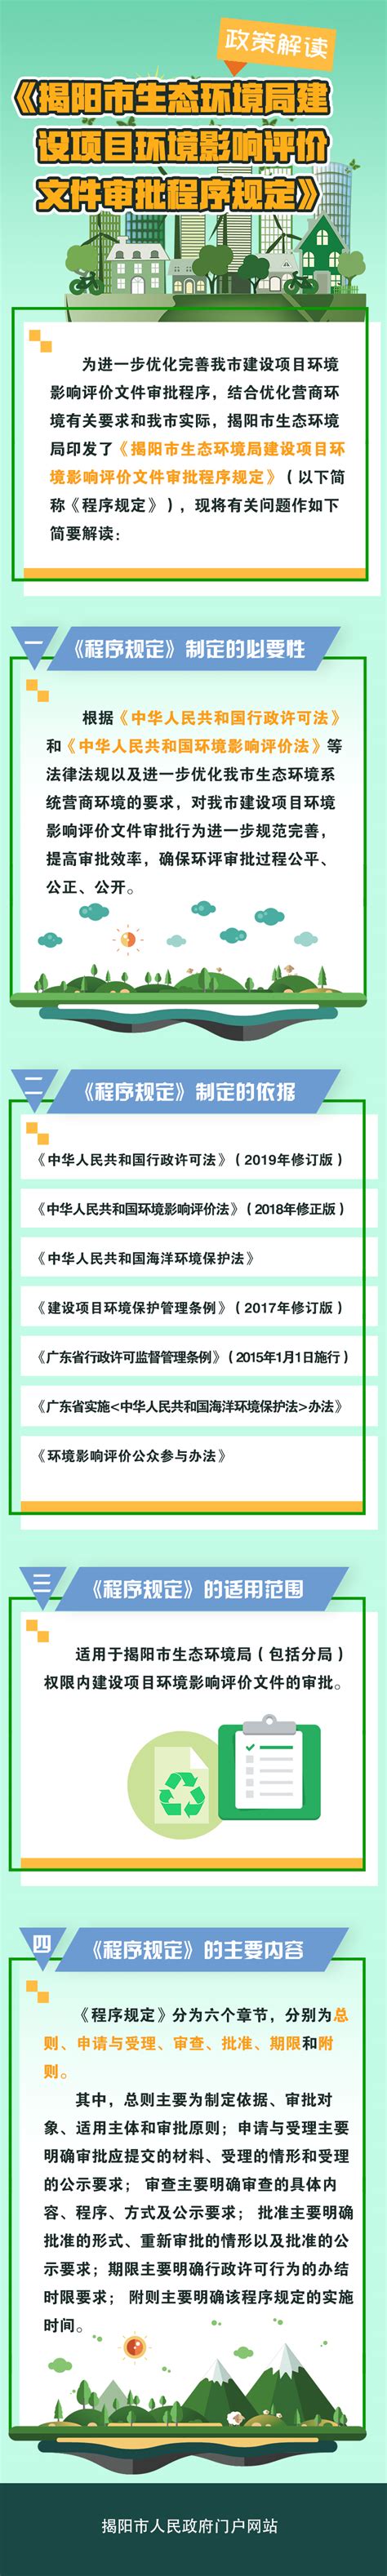 揭阳市商务局2015年政府信息公开工作年度报告